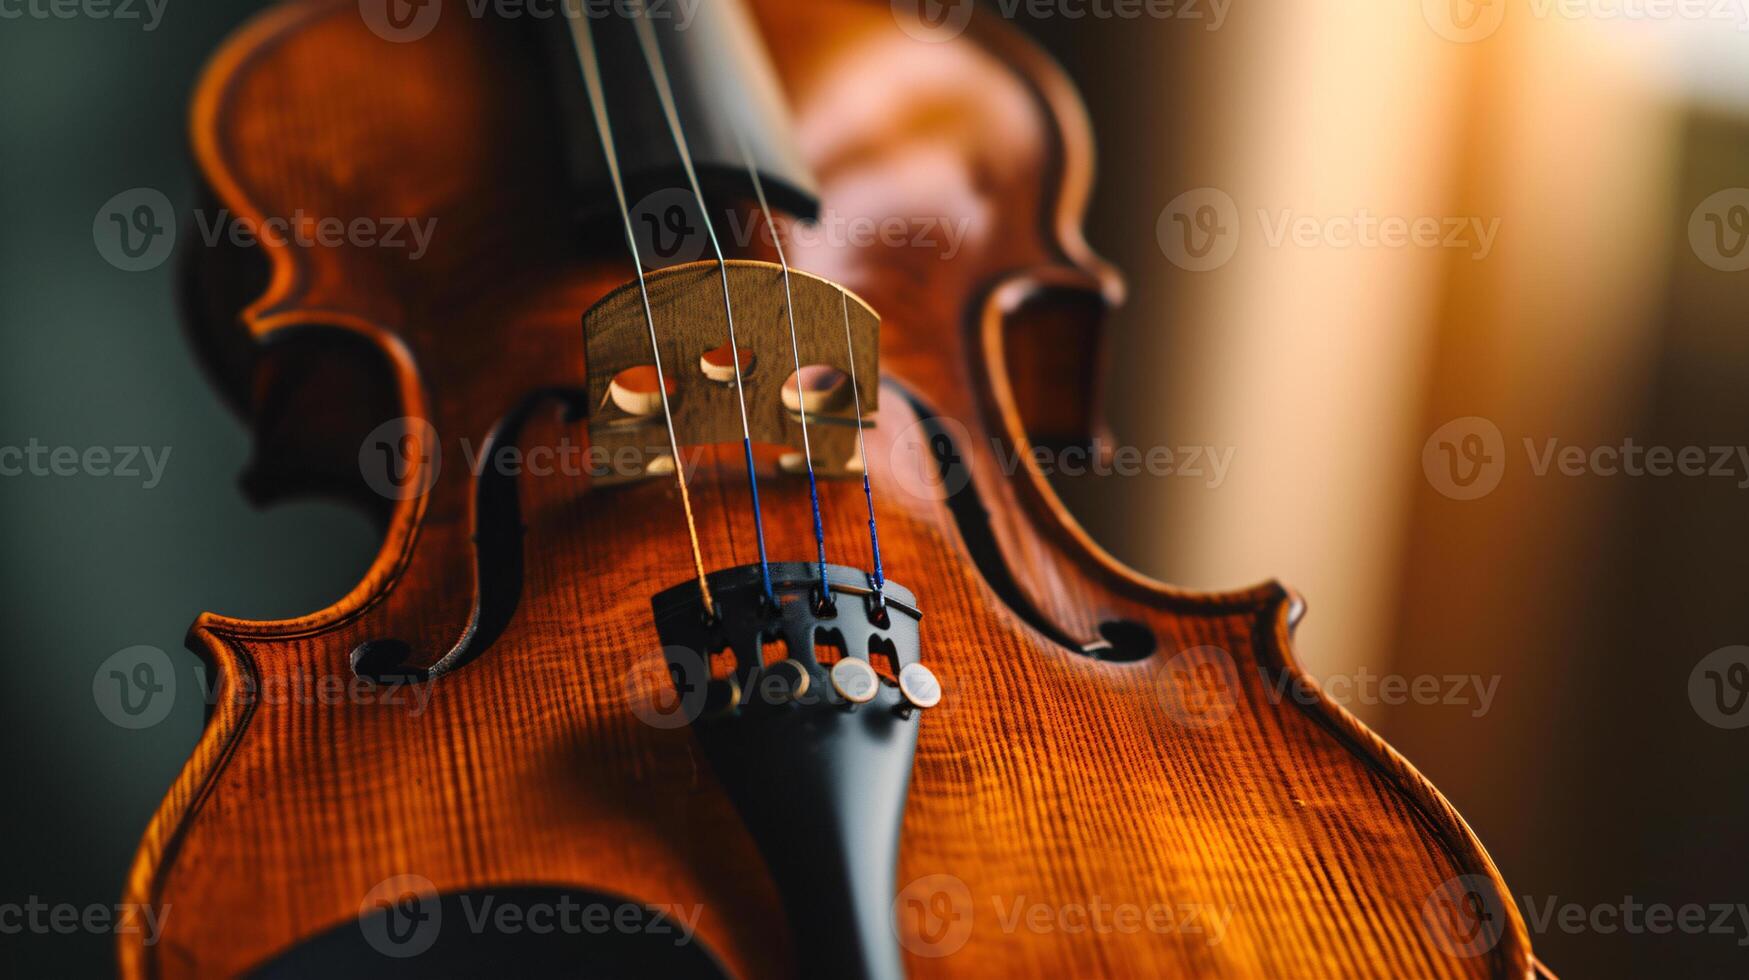 harmonie de musical instruments, se concentrer sur le élégant courbes de une violon photo